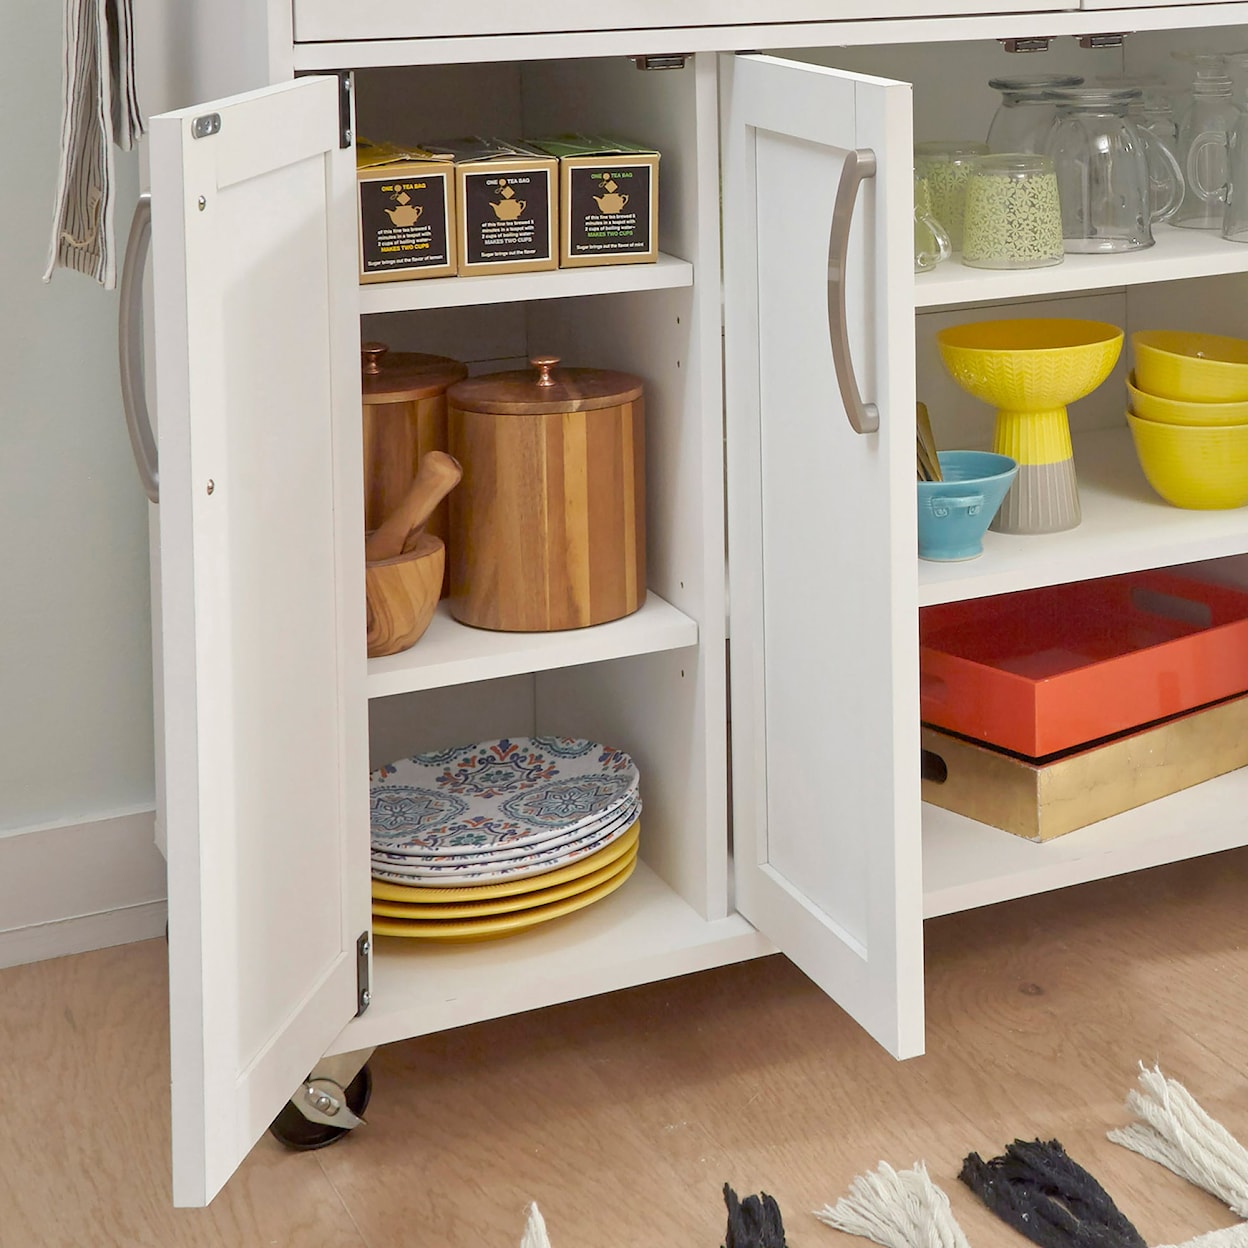 homestyles Storage Plus Kitchen Cart